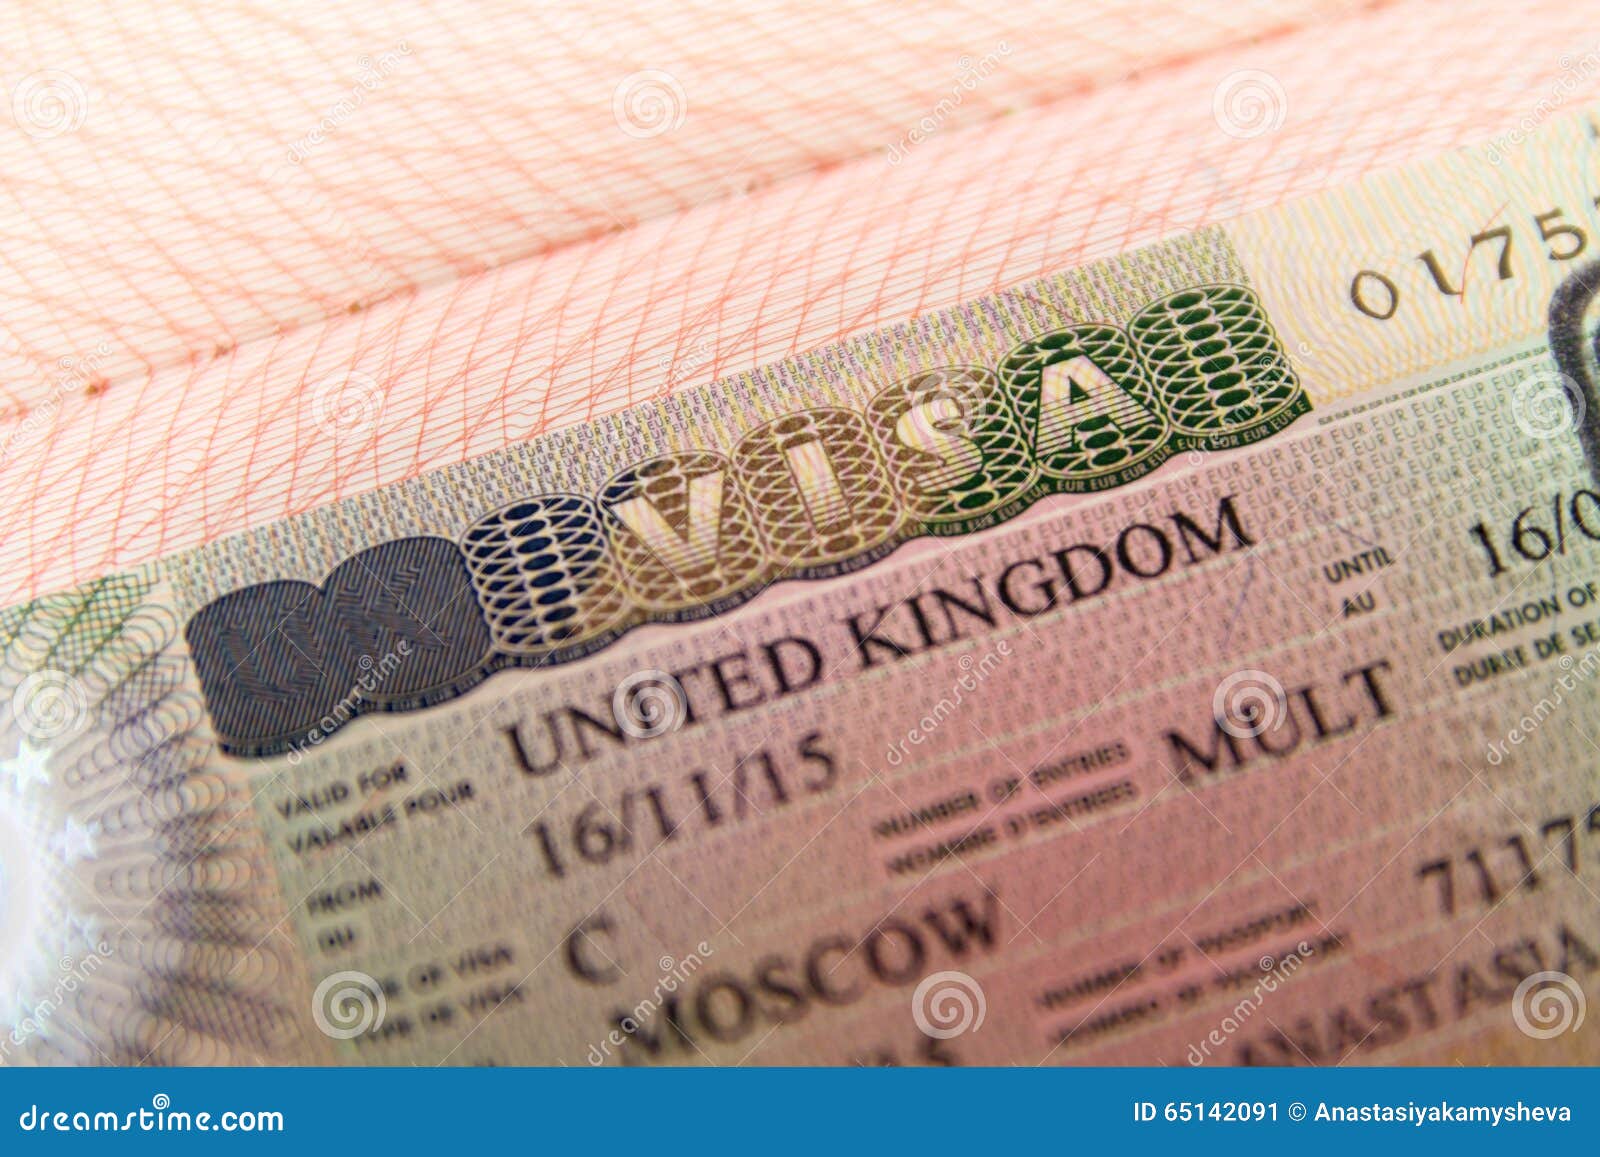 Visa de. Виза в Великобританию. Туристическая виза в Великобританию. Виза United Kingdom.